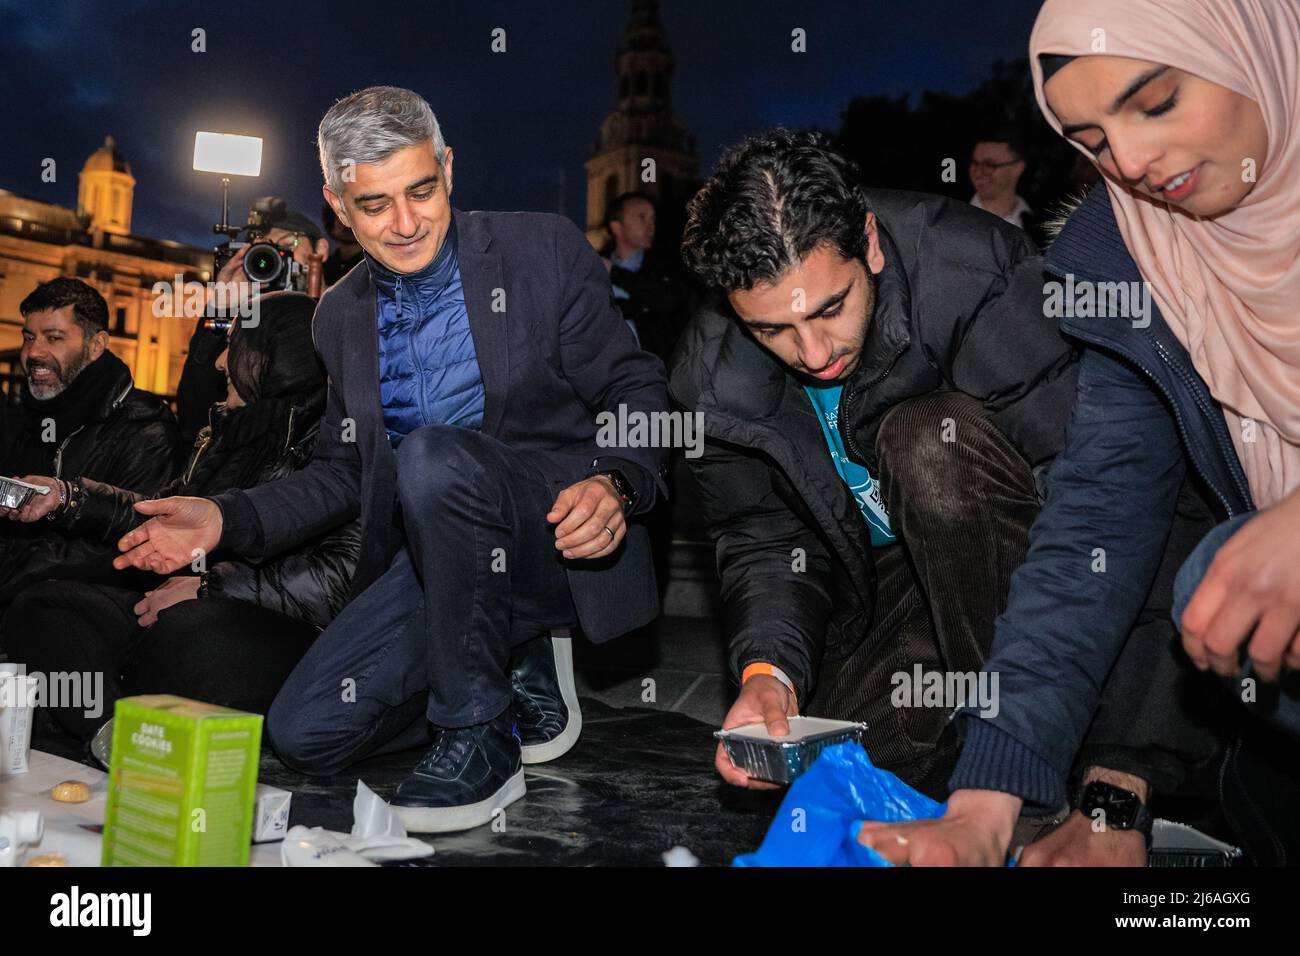 Londra, Regno Unito, 29th aprile 2022. Il sindaco di Londra Sadiq Khan aiuta a distribuire i pasti lungo le file di ristoranti seduti. Il più grande Open Iftar del Regno Unito, organizzato bz Ramadan Tent Project, riunisce le persone di tutte le comunità per condividere un Iftar (pasto serale) per rompere velocemente durante quella che è ora l'ultima settimana del mese santo islamico del Ramadan. All'evento partecipano Sadiq Khan, sindaco di Londra, e circa 2.000 membri del pubblico. Credit: Imagplotter/Alamy Live News Foto Stock